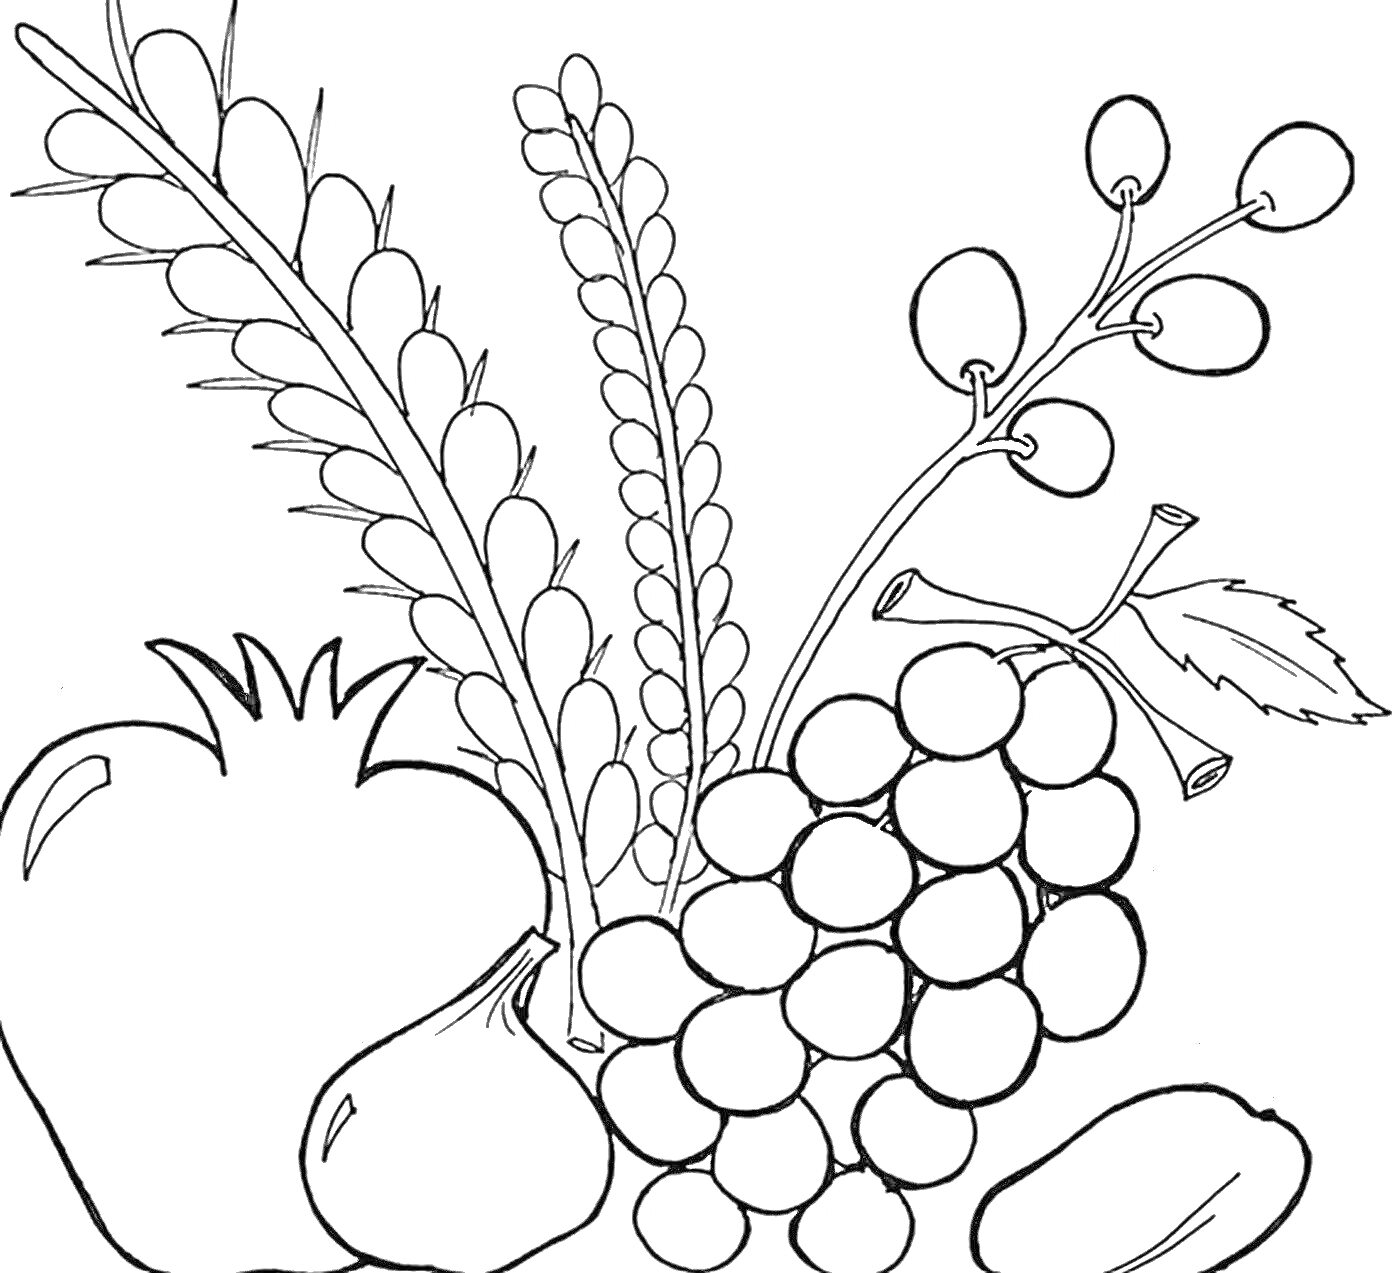 Раскраска Фрукты и злаки для Ту би Шват: гранат, инжир, виноград, финики, пшеница, ячмень